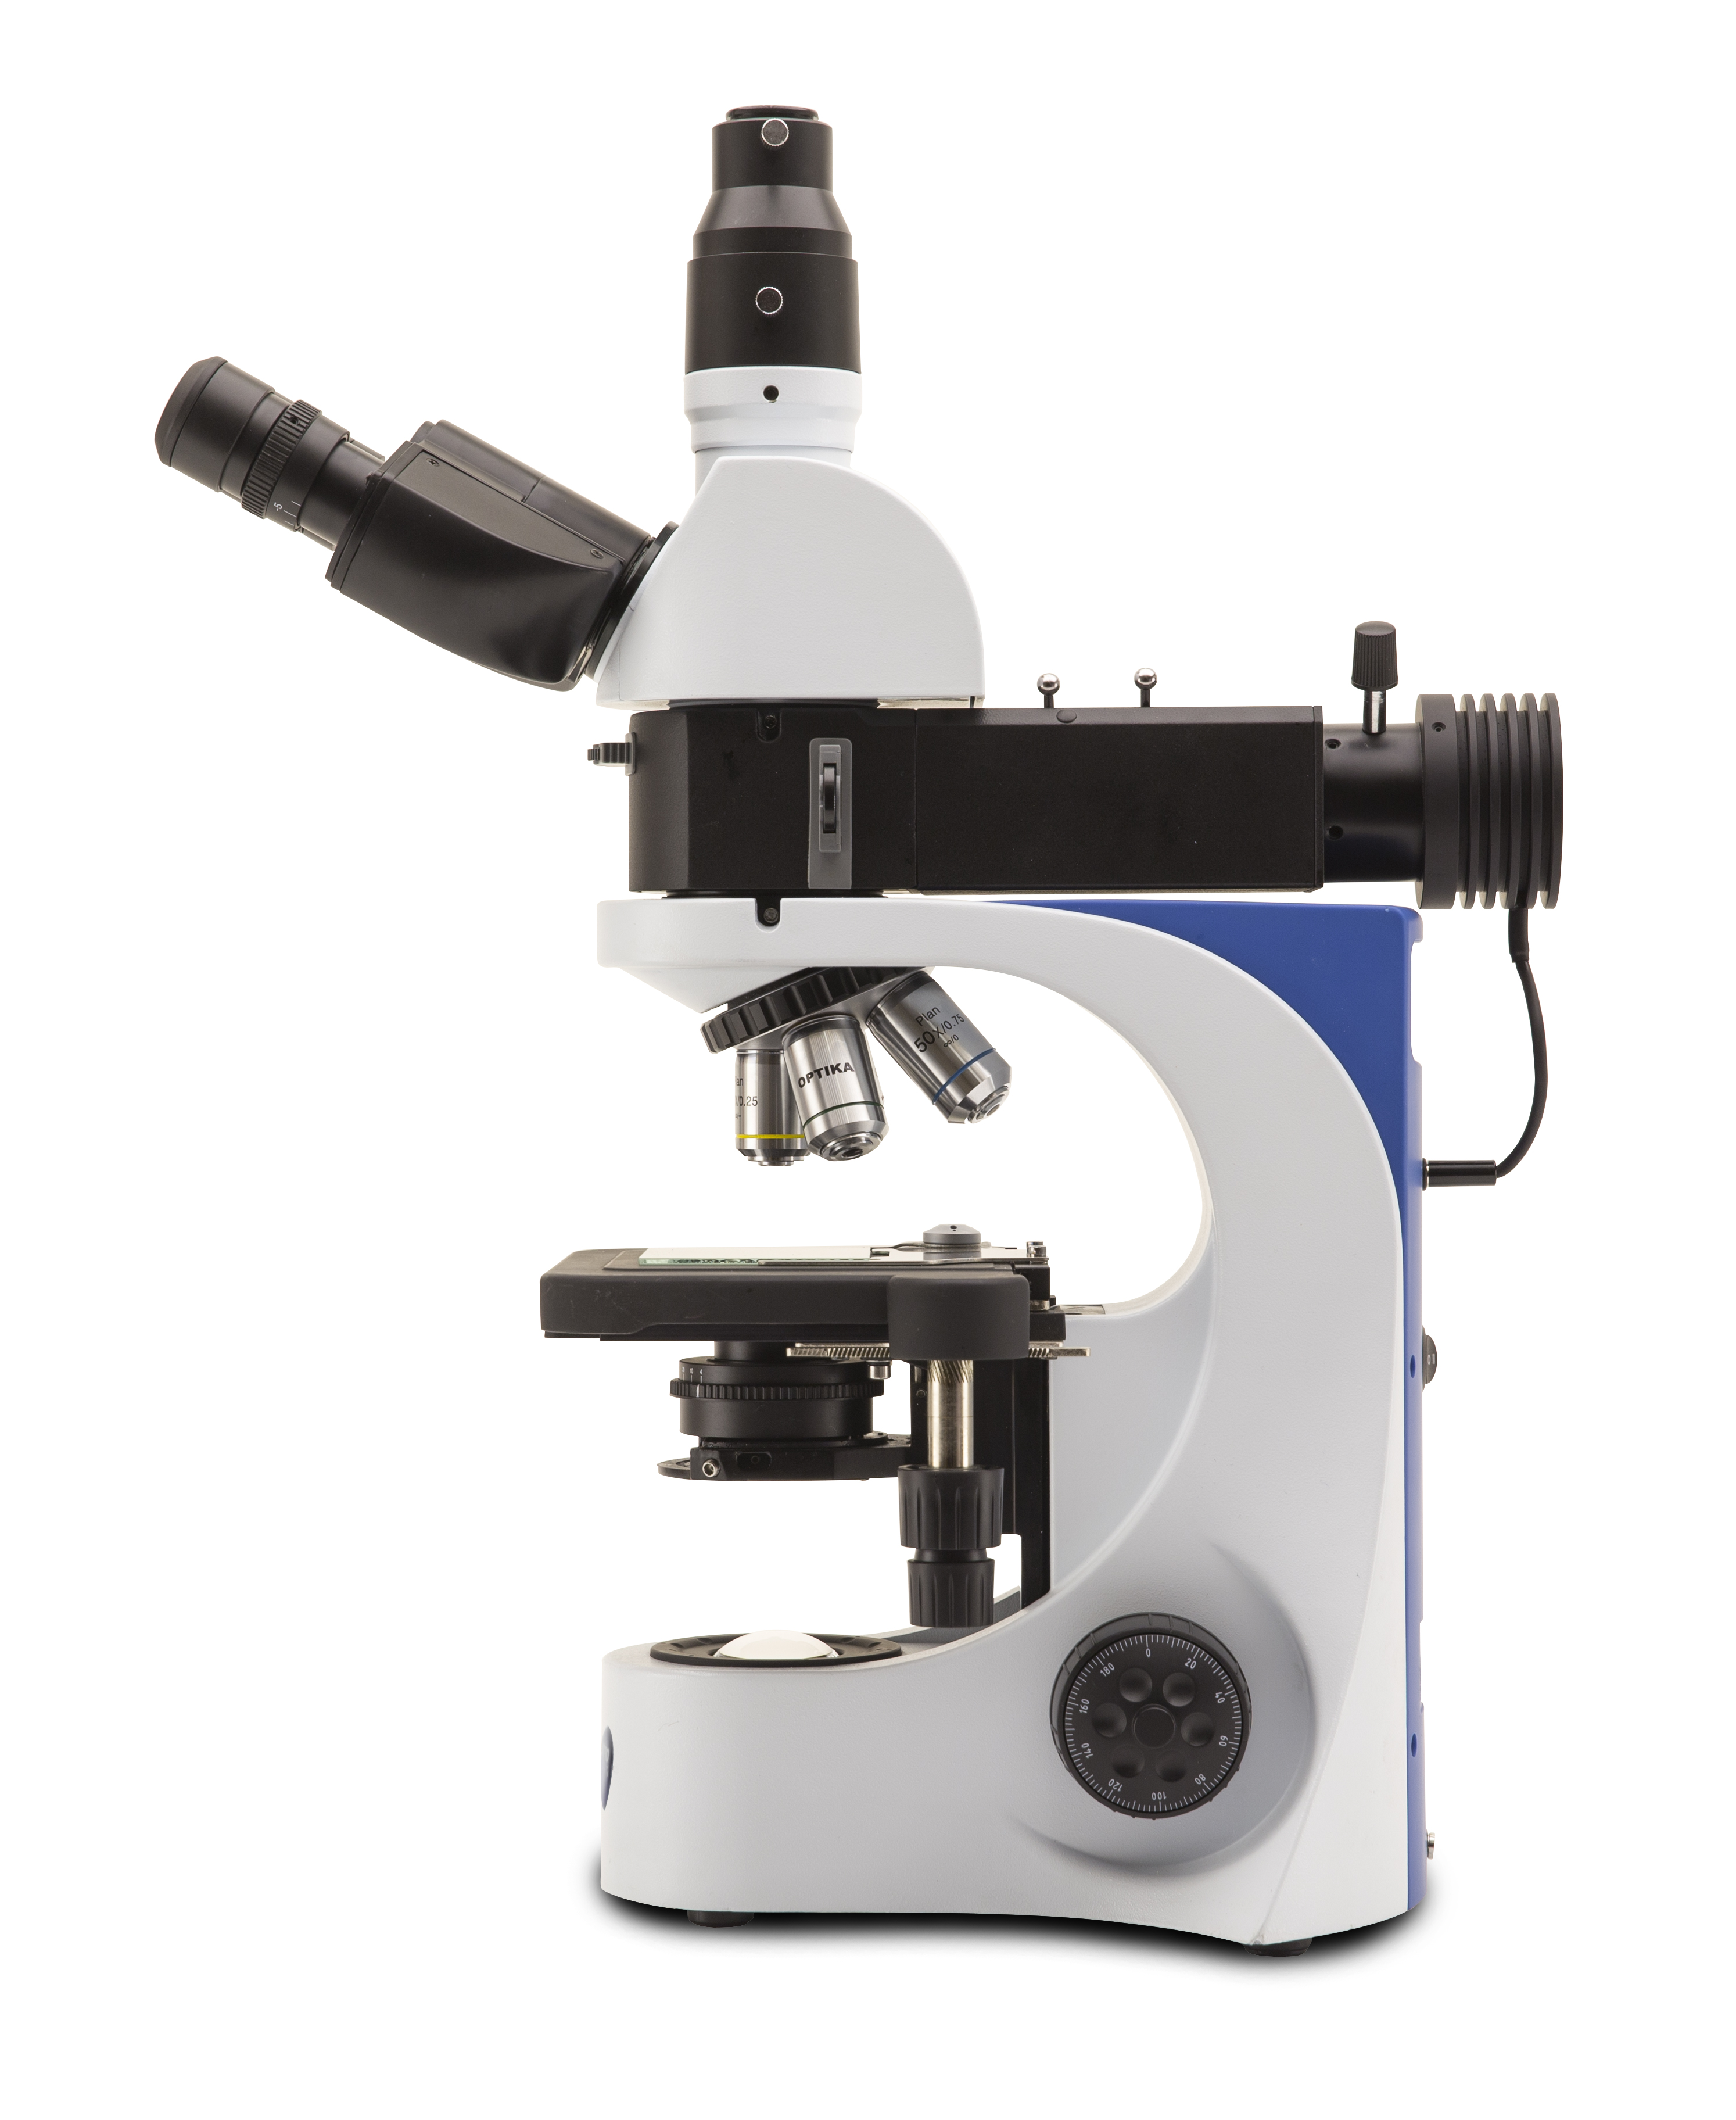 กล้องจุลทรรศน์แบบแสงตกกระทบสำหรับงานวัสดุและโลหะวิทยา (Metallurgical Upright Microscope) ยี่ห้อ OPTIKA รุ่น B-383MET